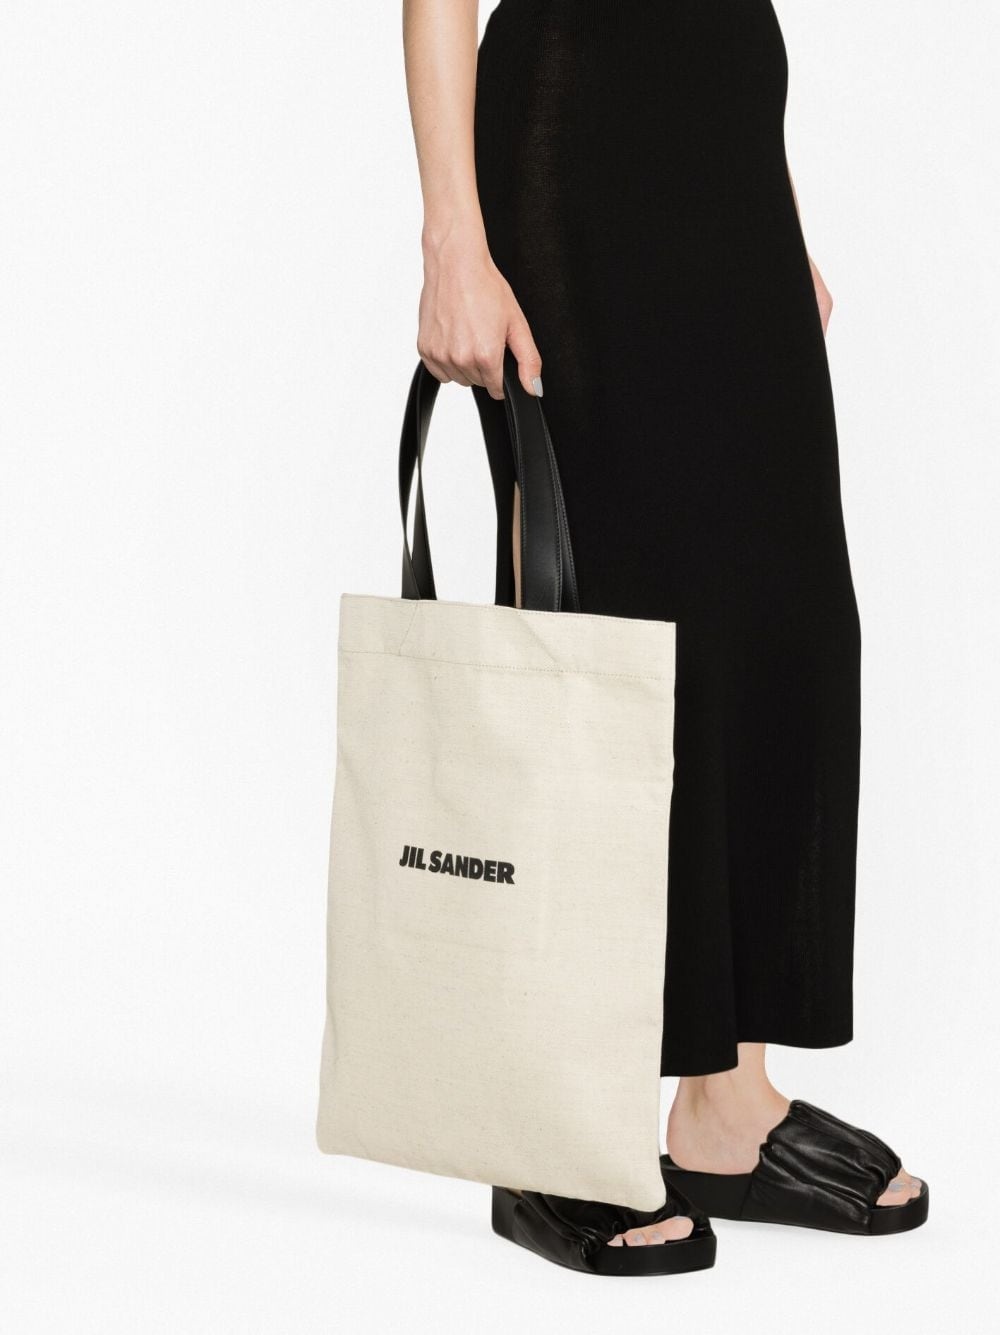 Book tote linen shopping bag - 2